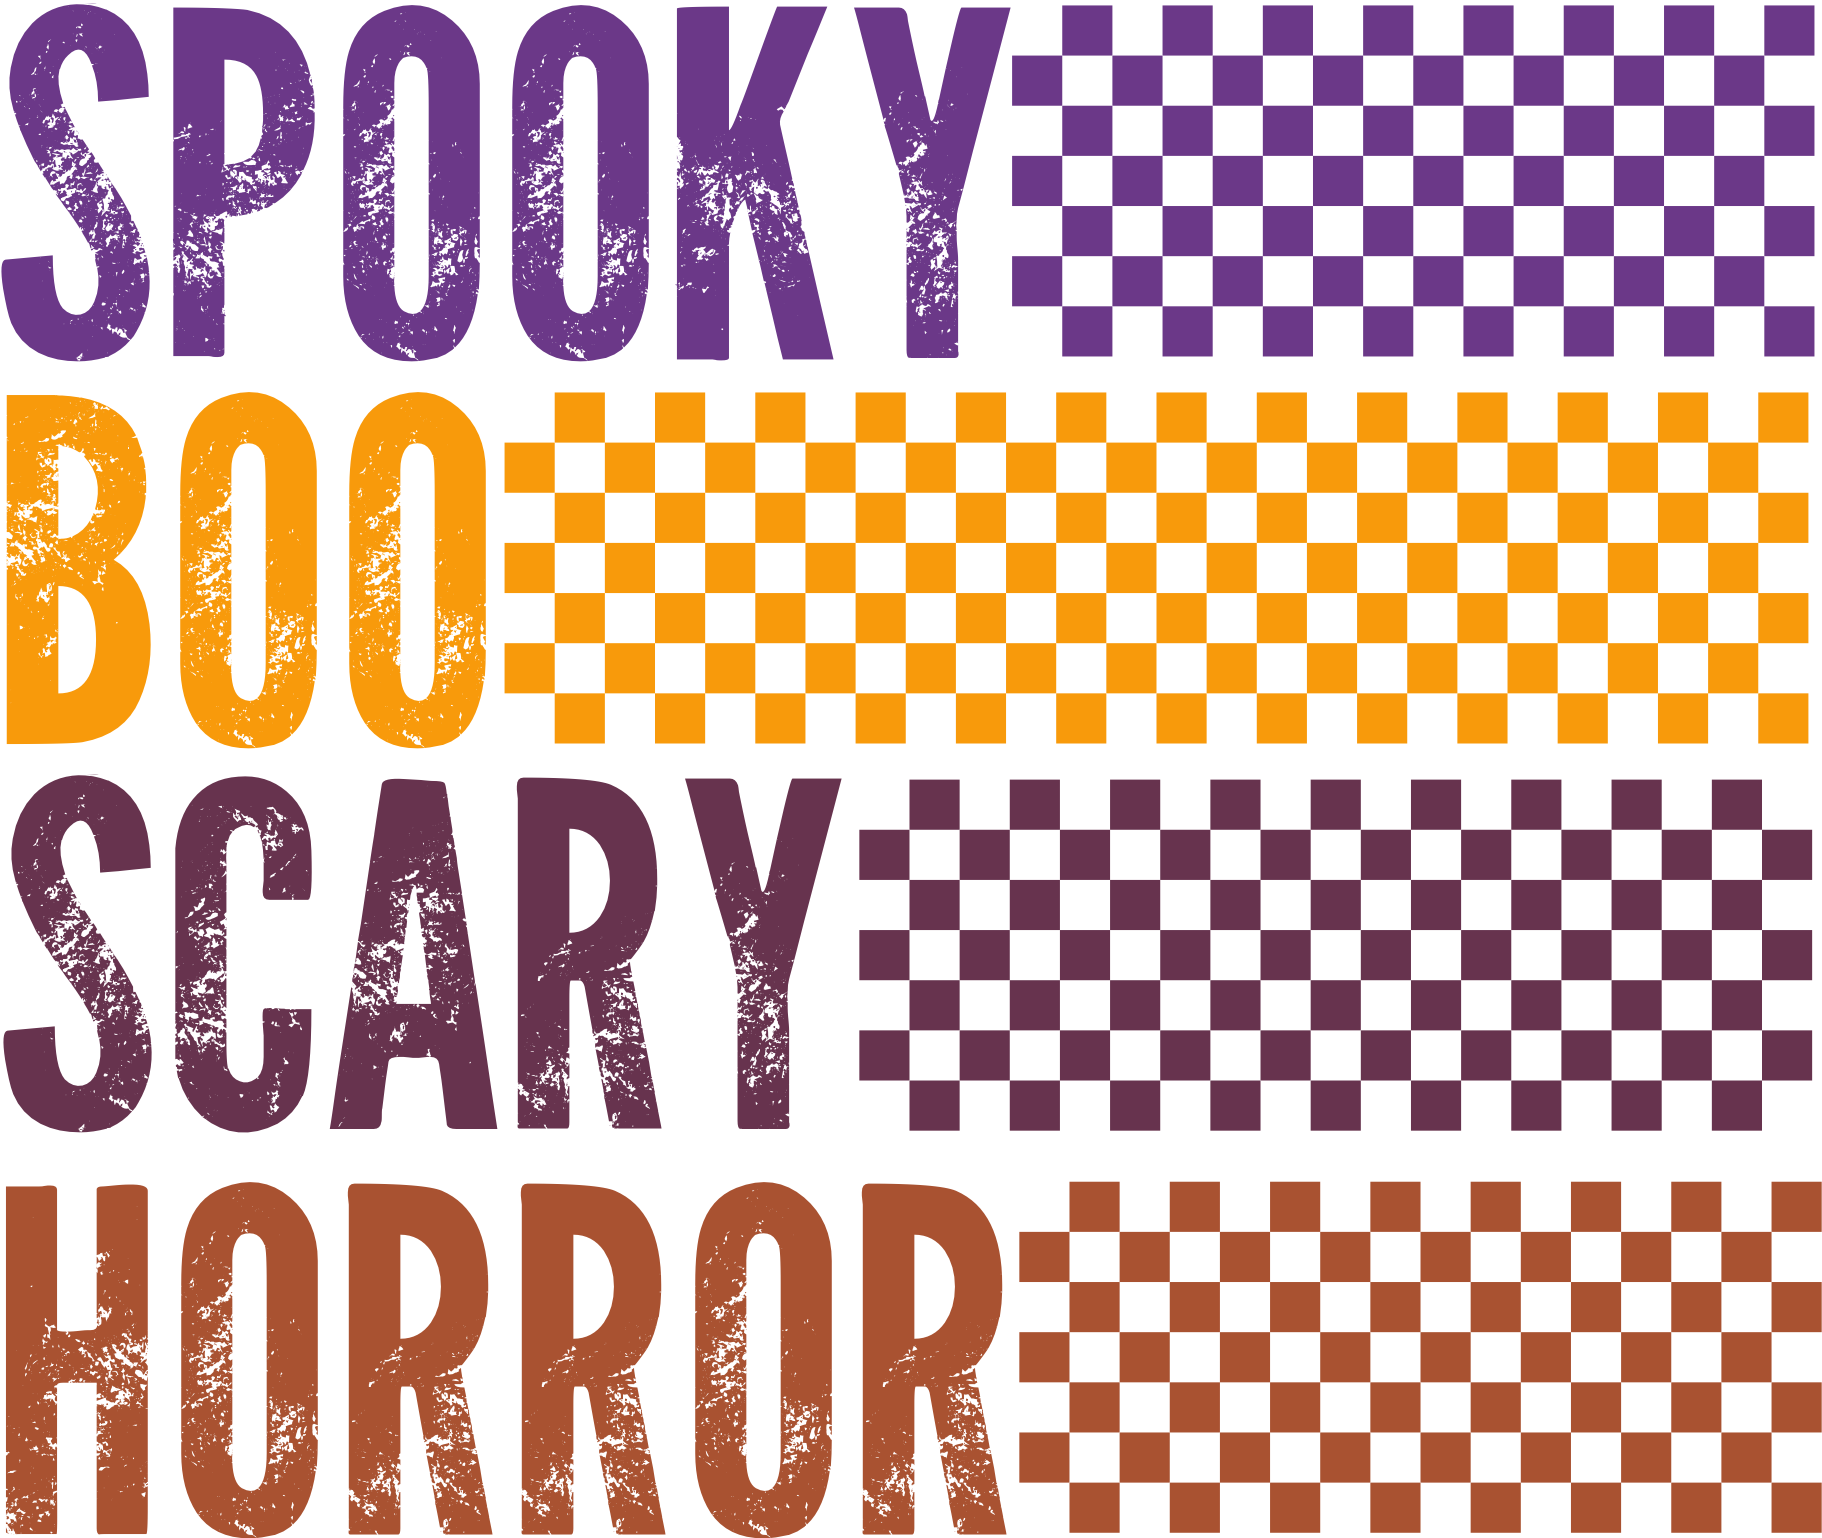 Spooky Boo Scary Horror DTF Transfer – MarisaDesignsCo